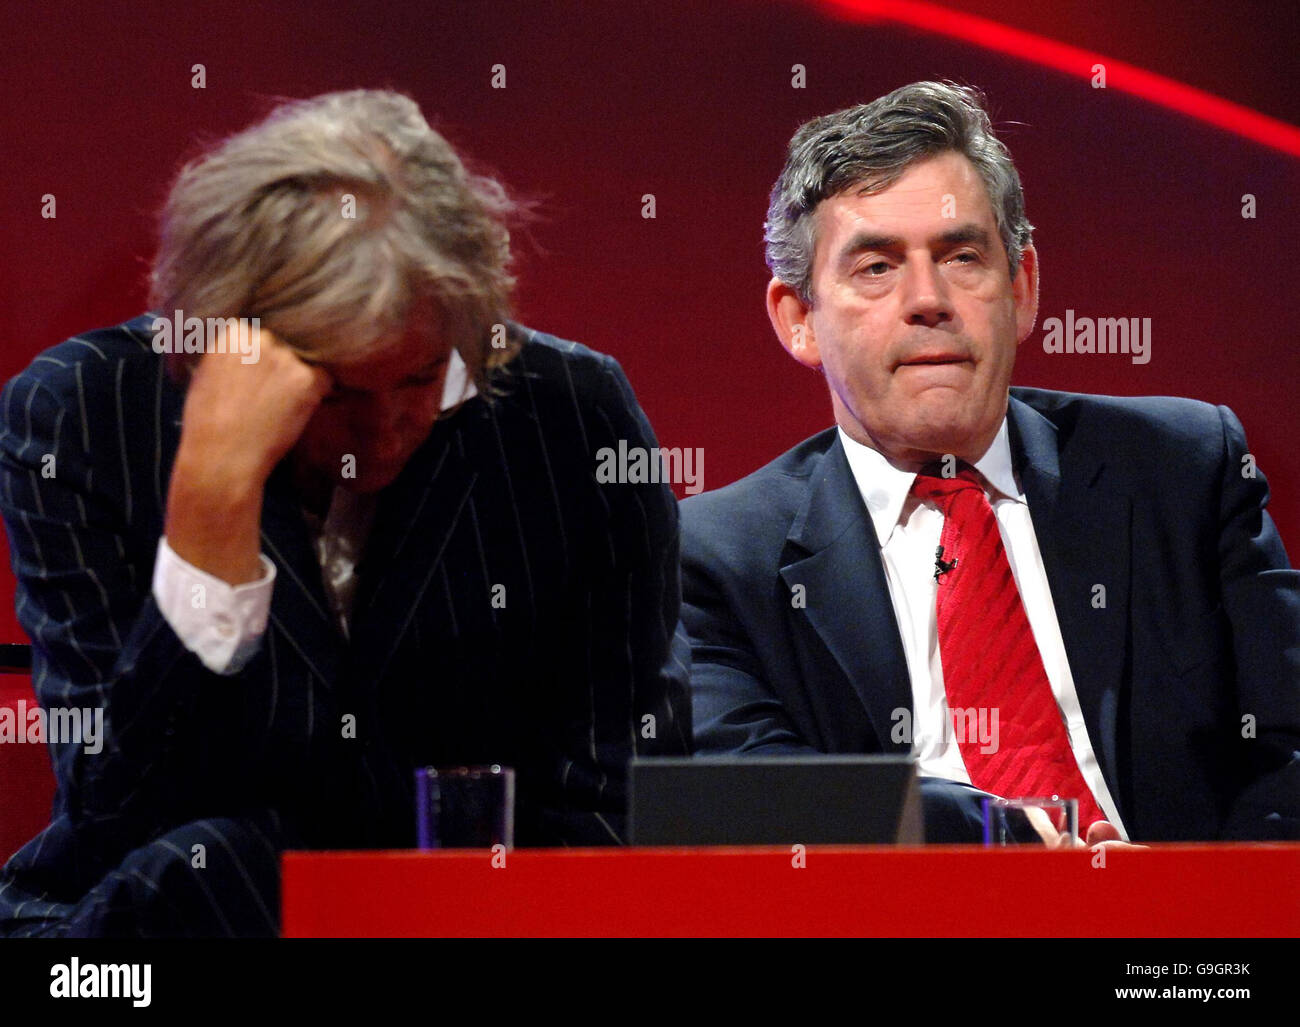 Bob Geldof, fondateur de Live Aid, et Gordon Brown, chancelier, participent à un débat à la conférence du Parti travailliste sur les progrès réalisés depuis la conférence du G8 de Gleneagles, l'été dernier, sur l'aide, l'allégement de la dette et la réduction des émissions de gaz à effet de serre. Banque D'Images